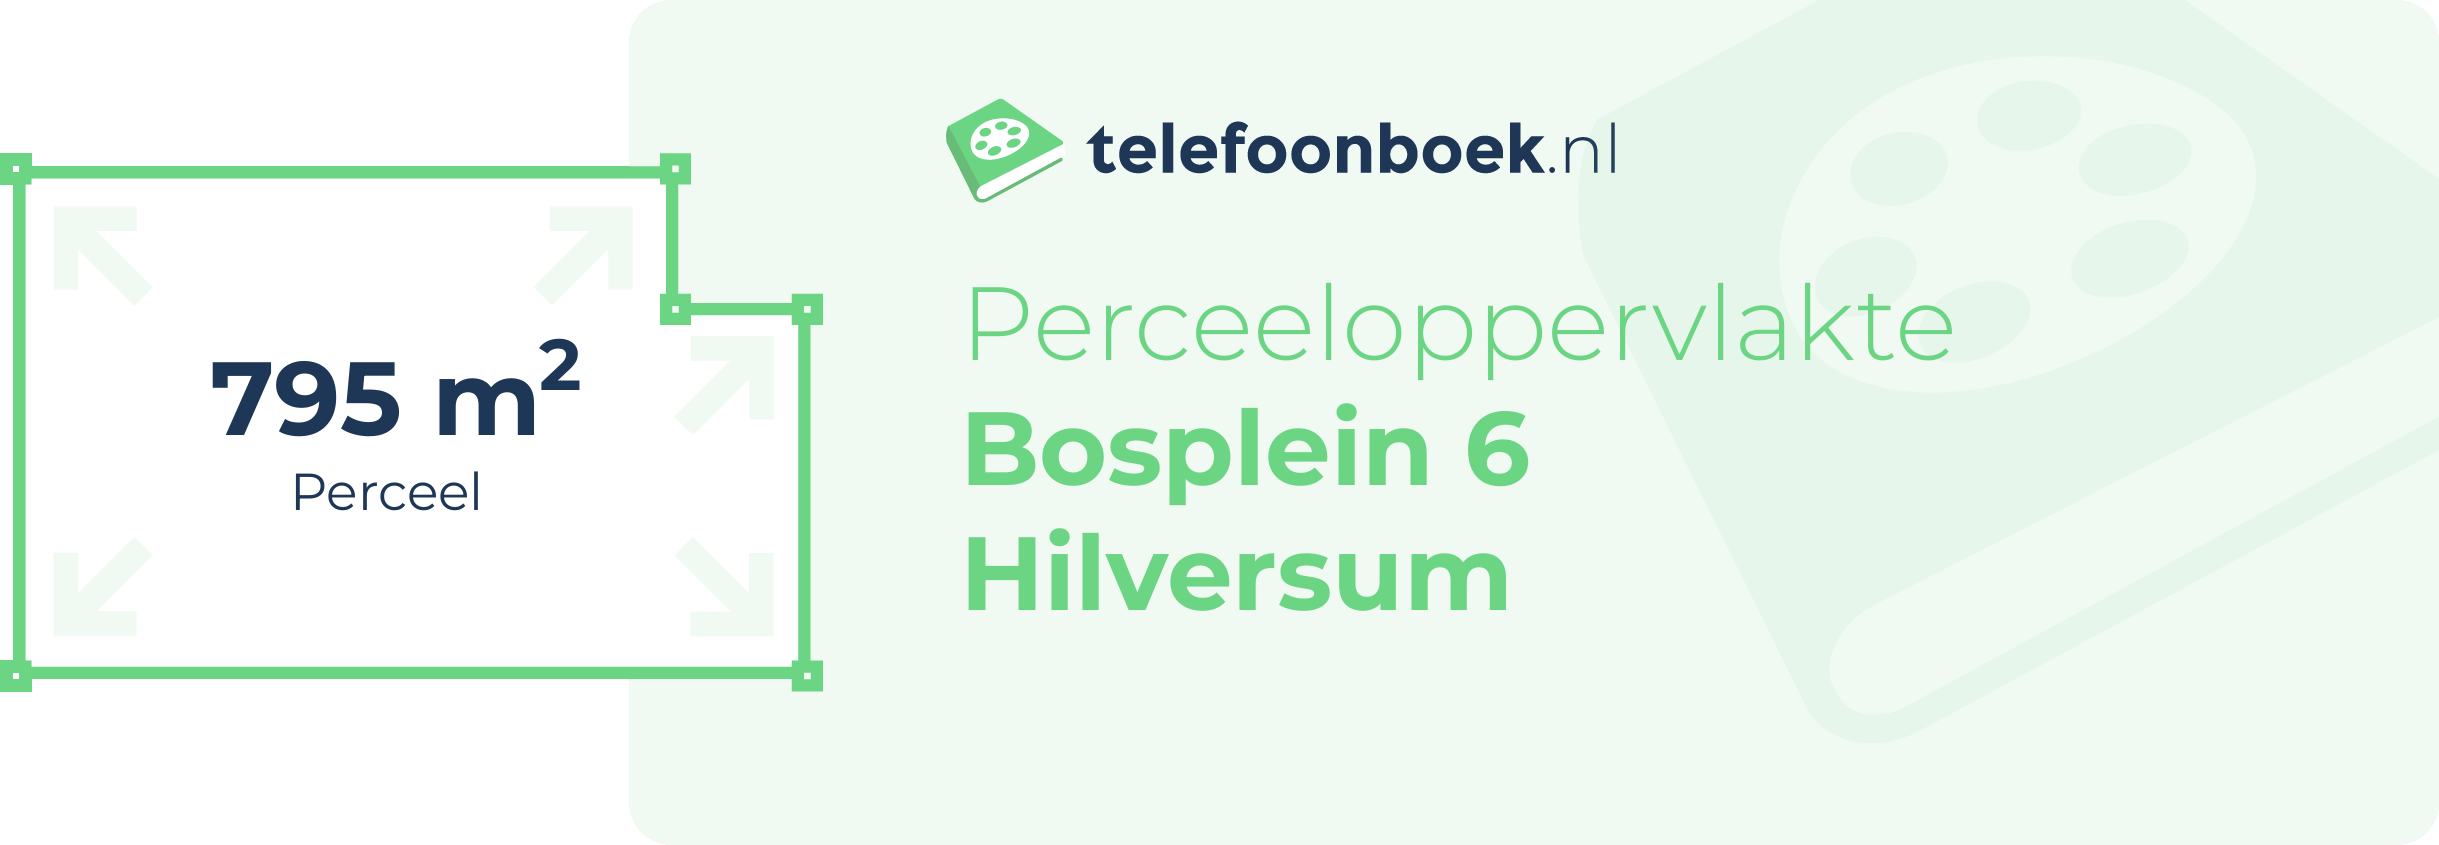 Perceeloppervlakte Bosplein 6 Hilversum